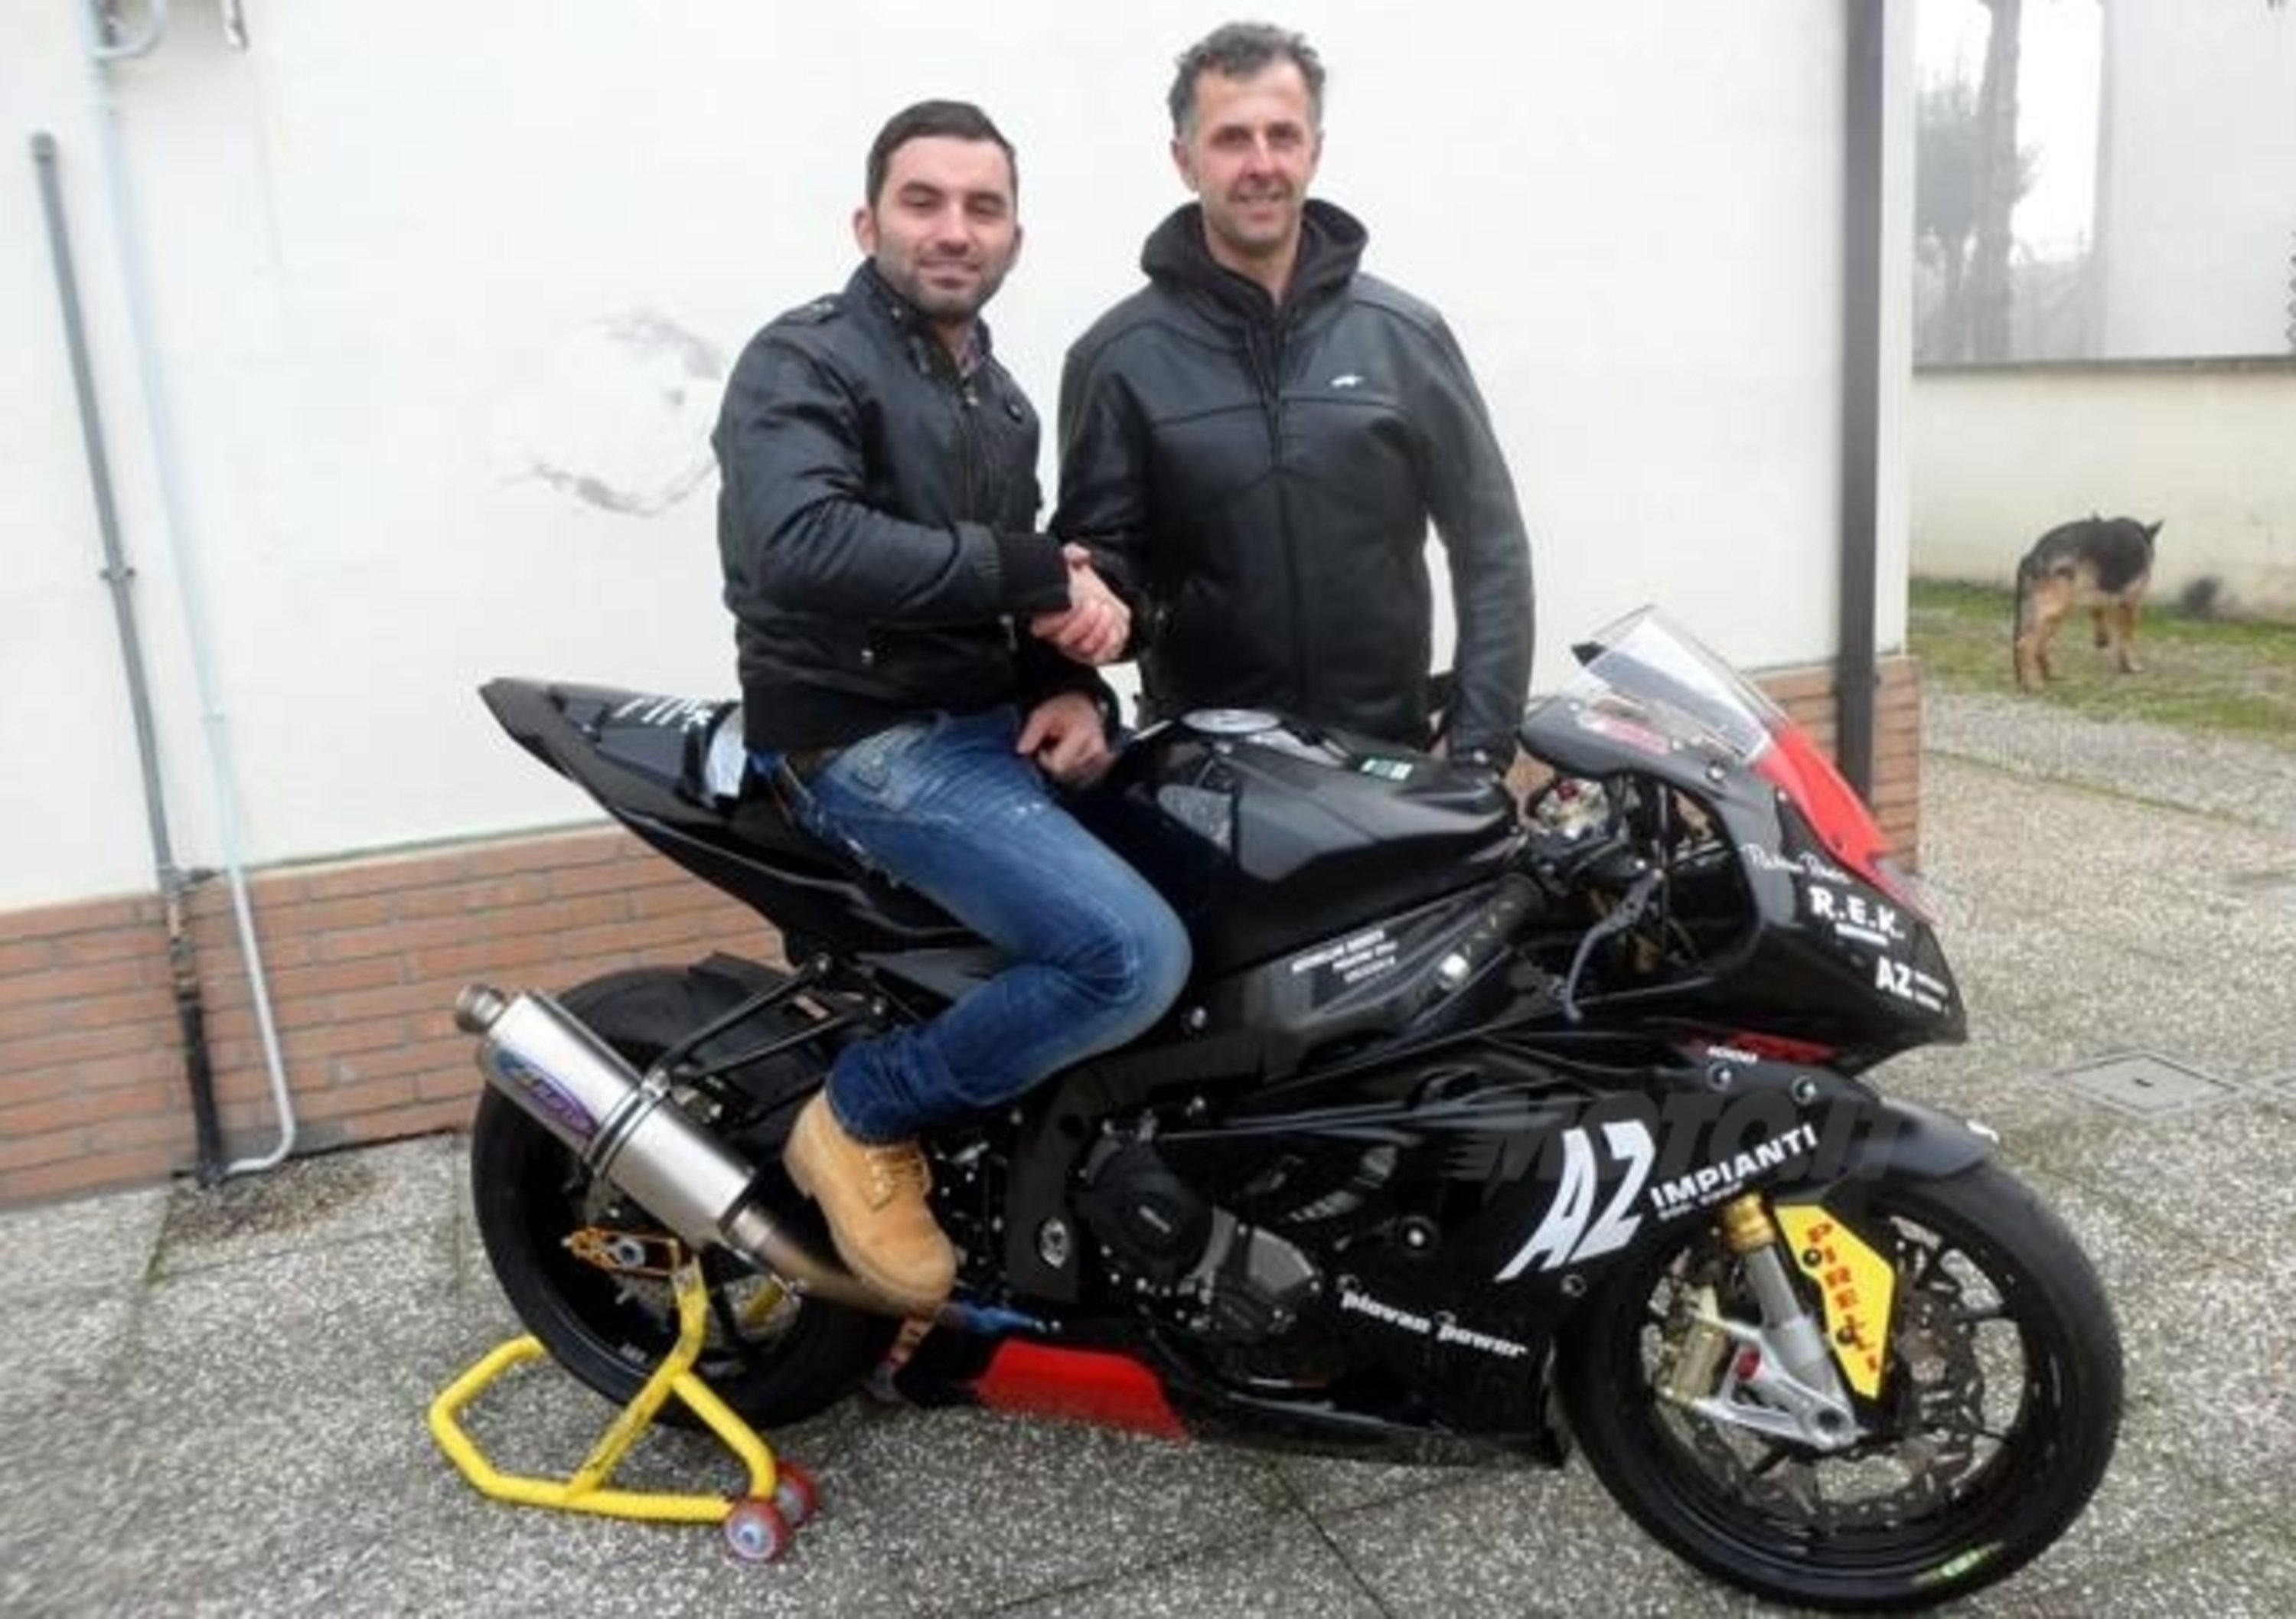 Alessio Velini disputer&agrave; il CIV Stock 1000 con il 2R Racing Team